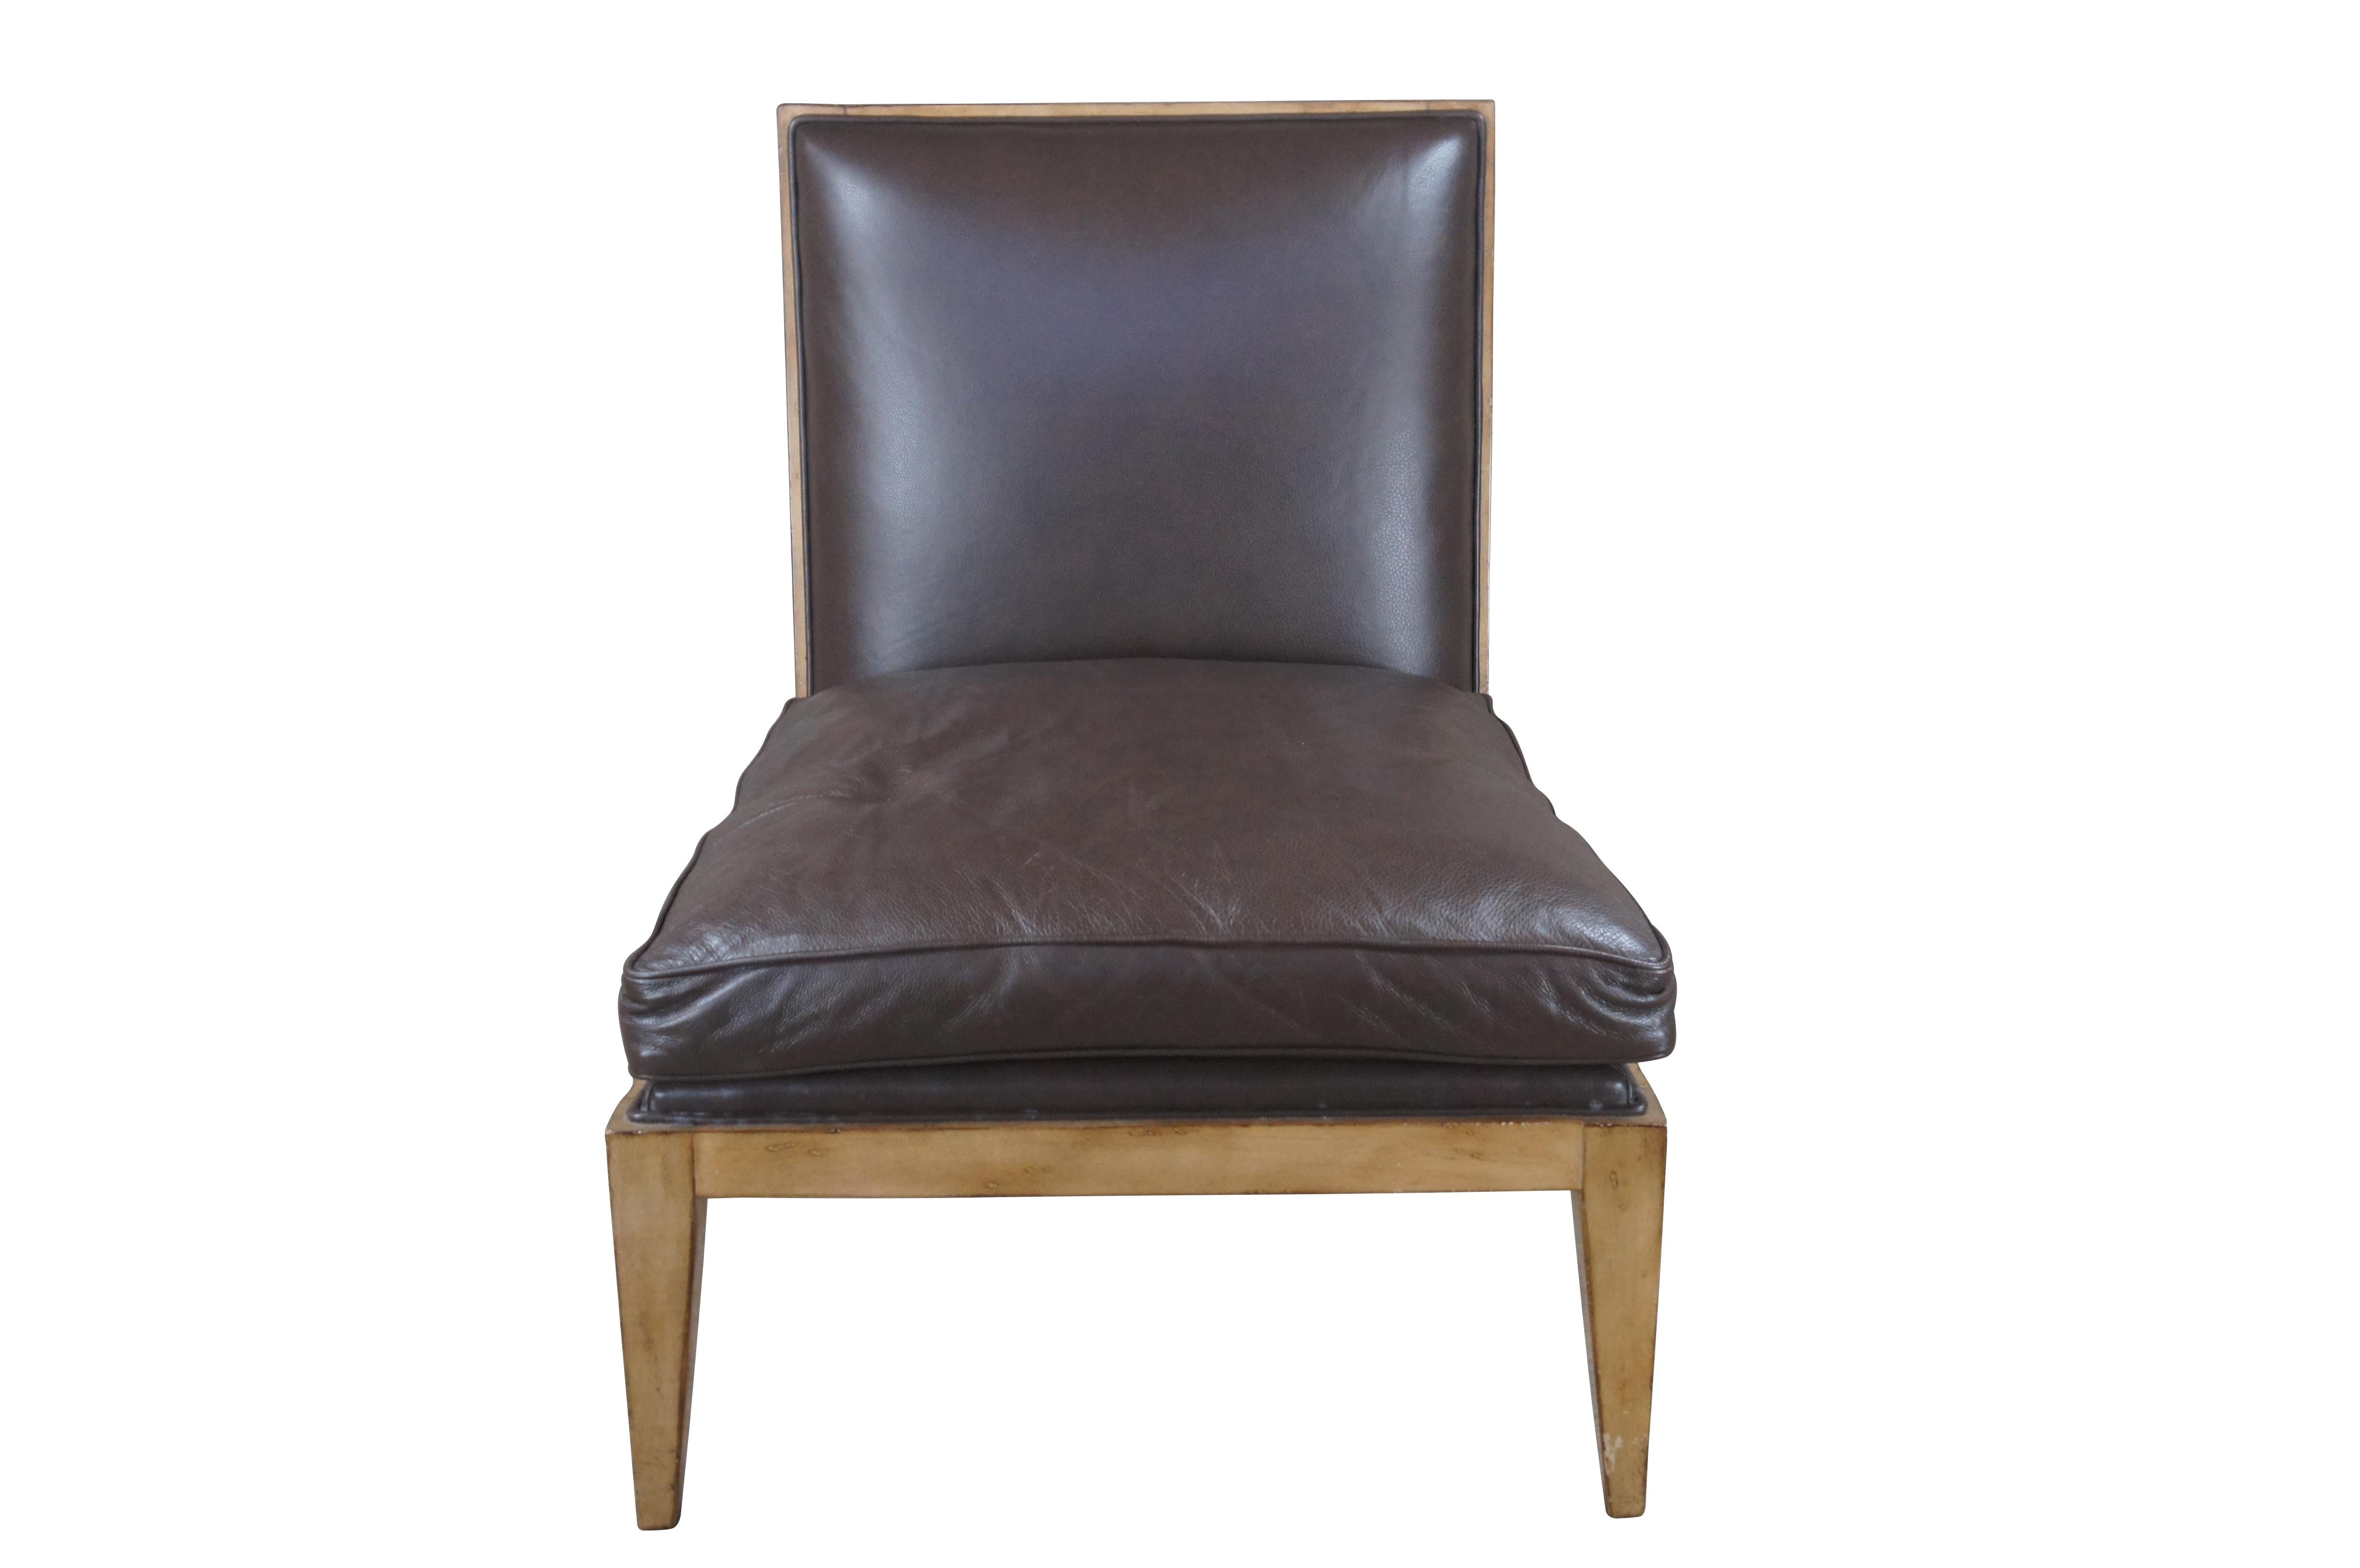 Ein schöner armloser Pantoffelstuhl von Swaim Upholstery. Ursprünglich erstellt für Marc-Miachaels Interior Design. Mit braunem Lederbezug und einem Gestell aus Eichenholz. Der Stuhl wird von quadratischen, konischen Beinen getragen. Ein nahtloses,